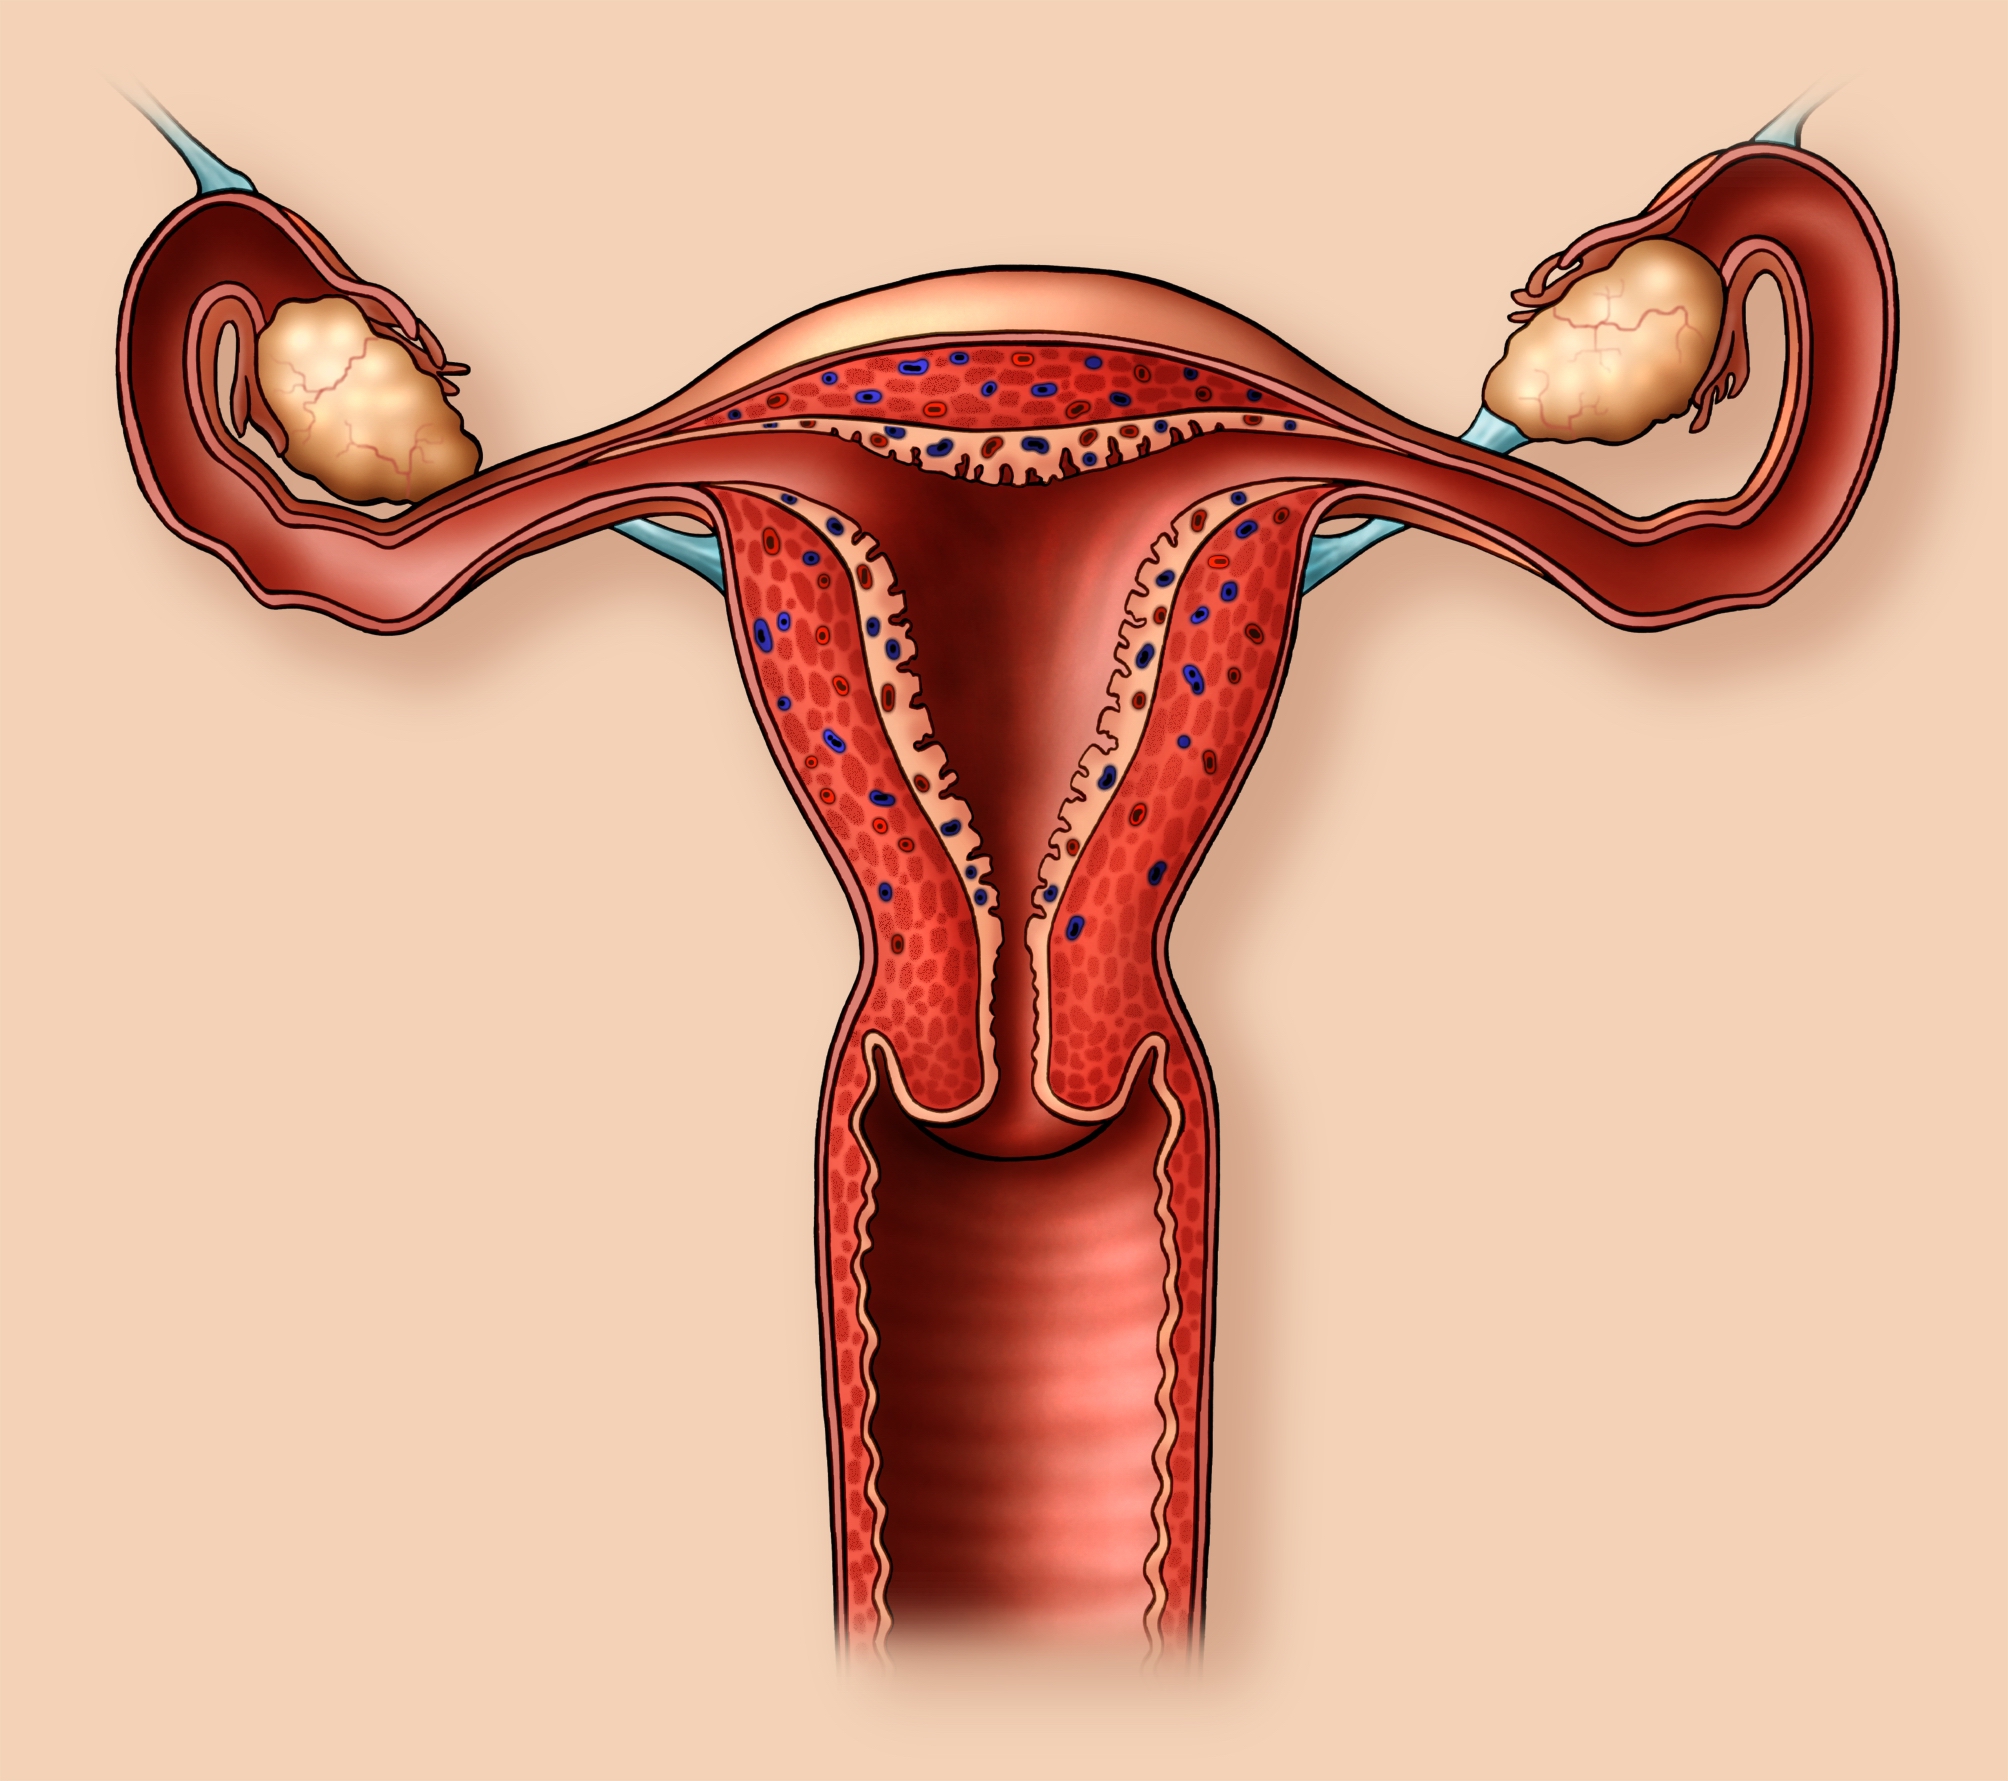 Аномалии репродуктивной системы женщины